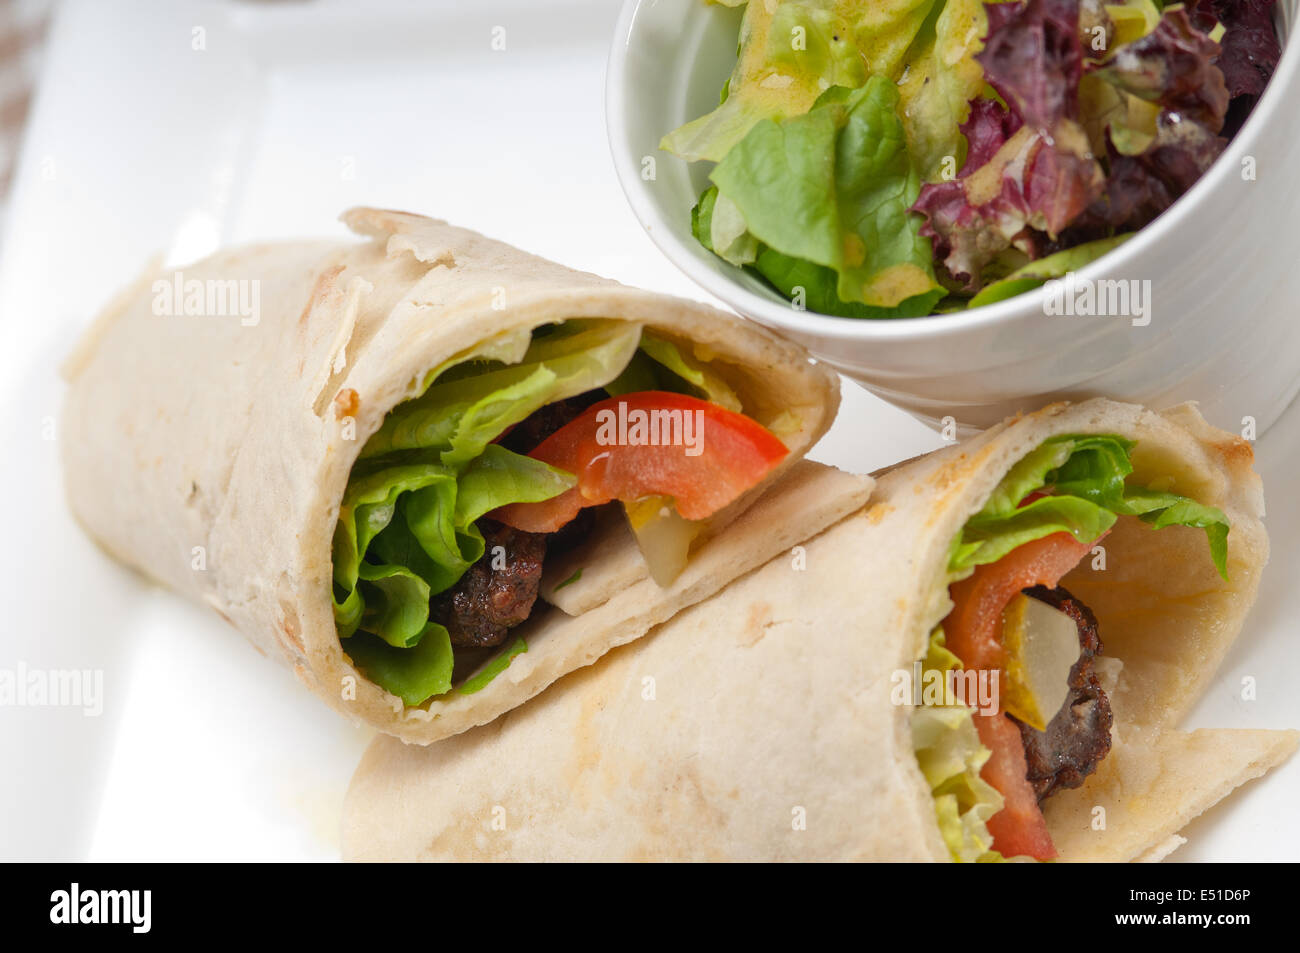 kafta shawarma chicken pita wrap roll sandwich Stock Photo